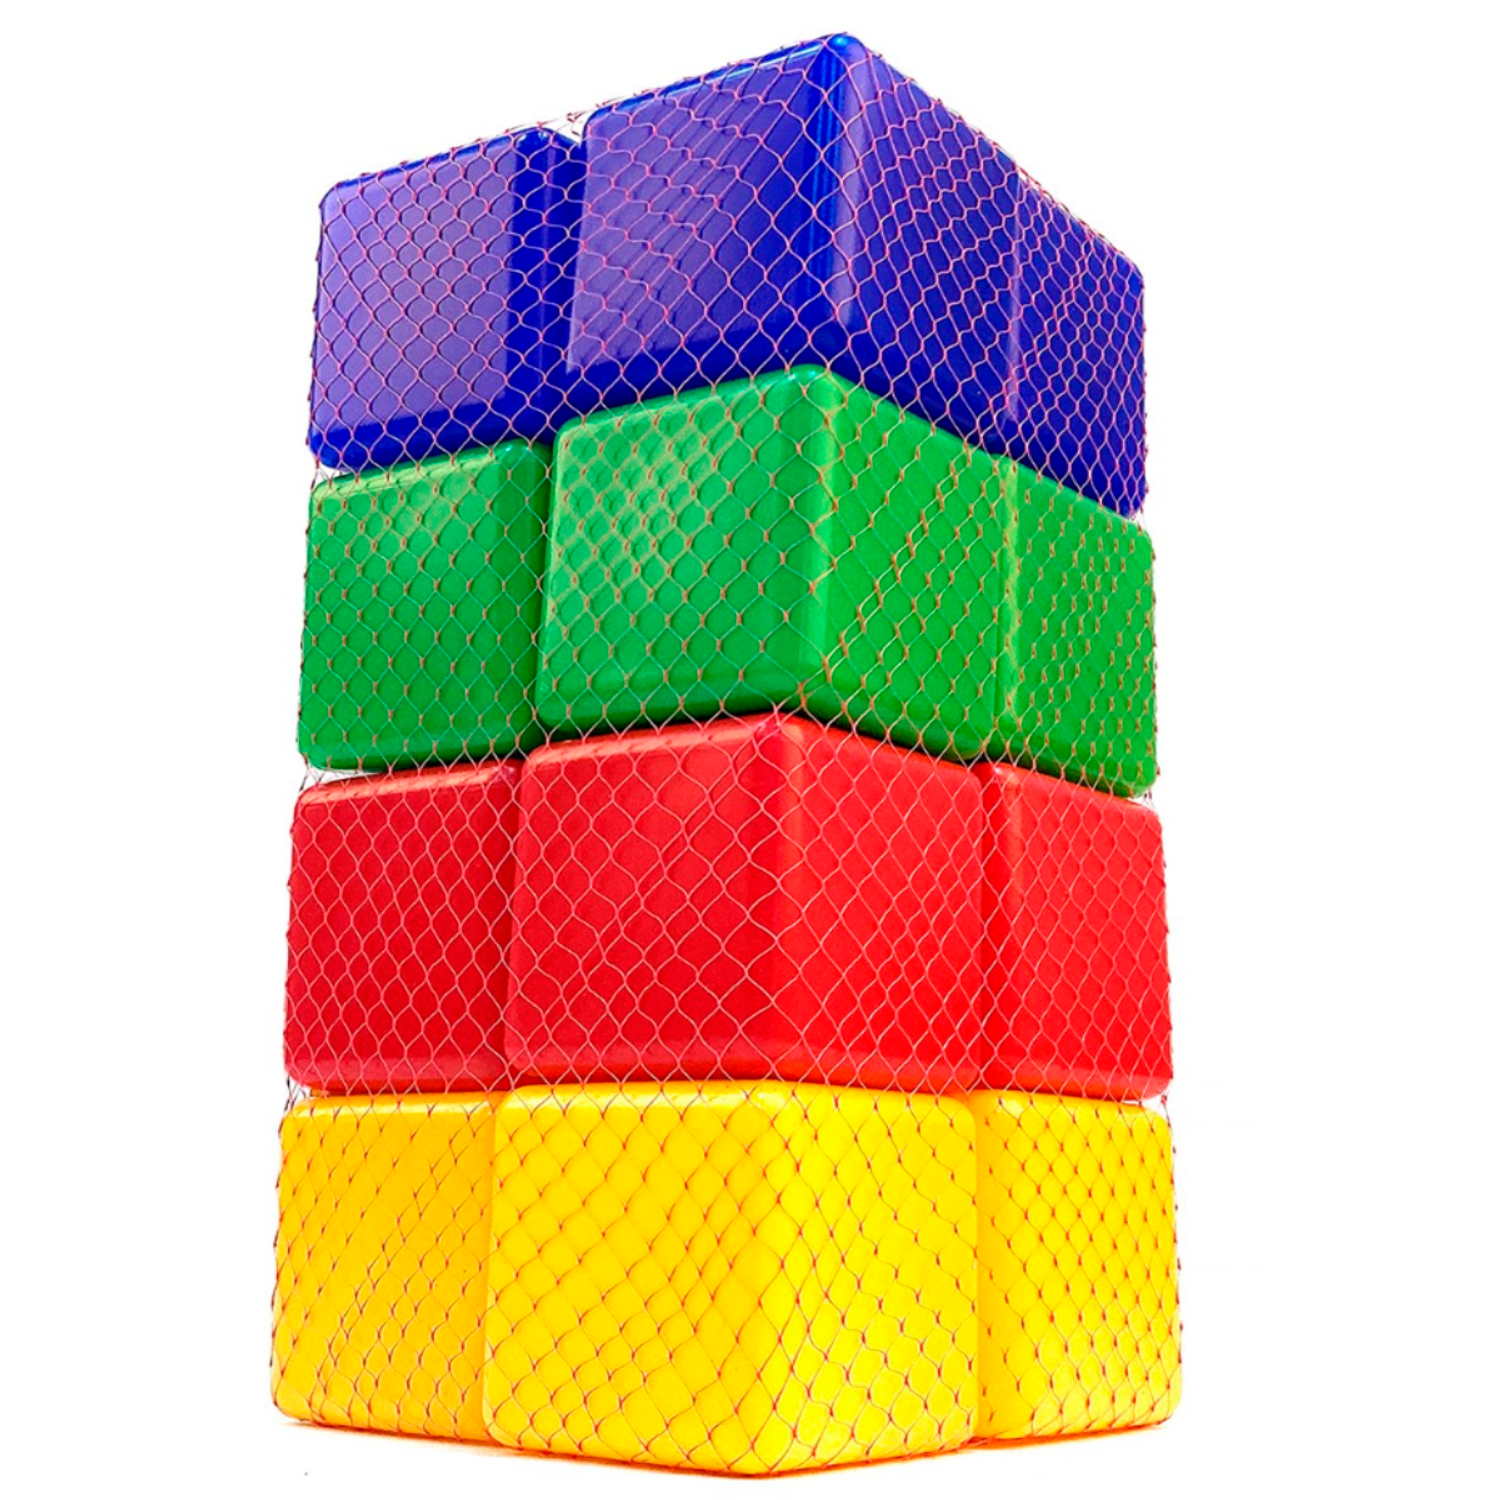 Игровой набор для детей Новокузнецкий Завод Пластмасс Кубики цветные развивающие 16 шт - фото 4